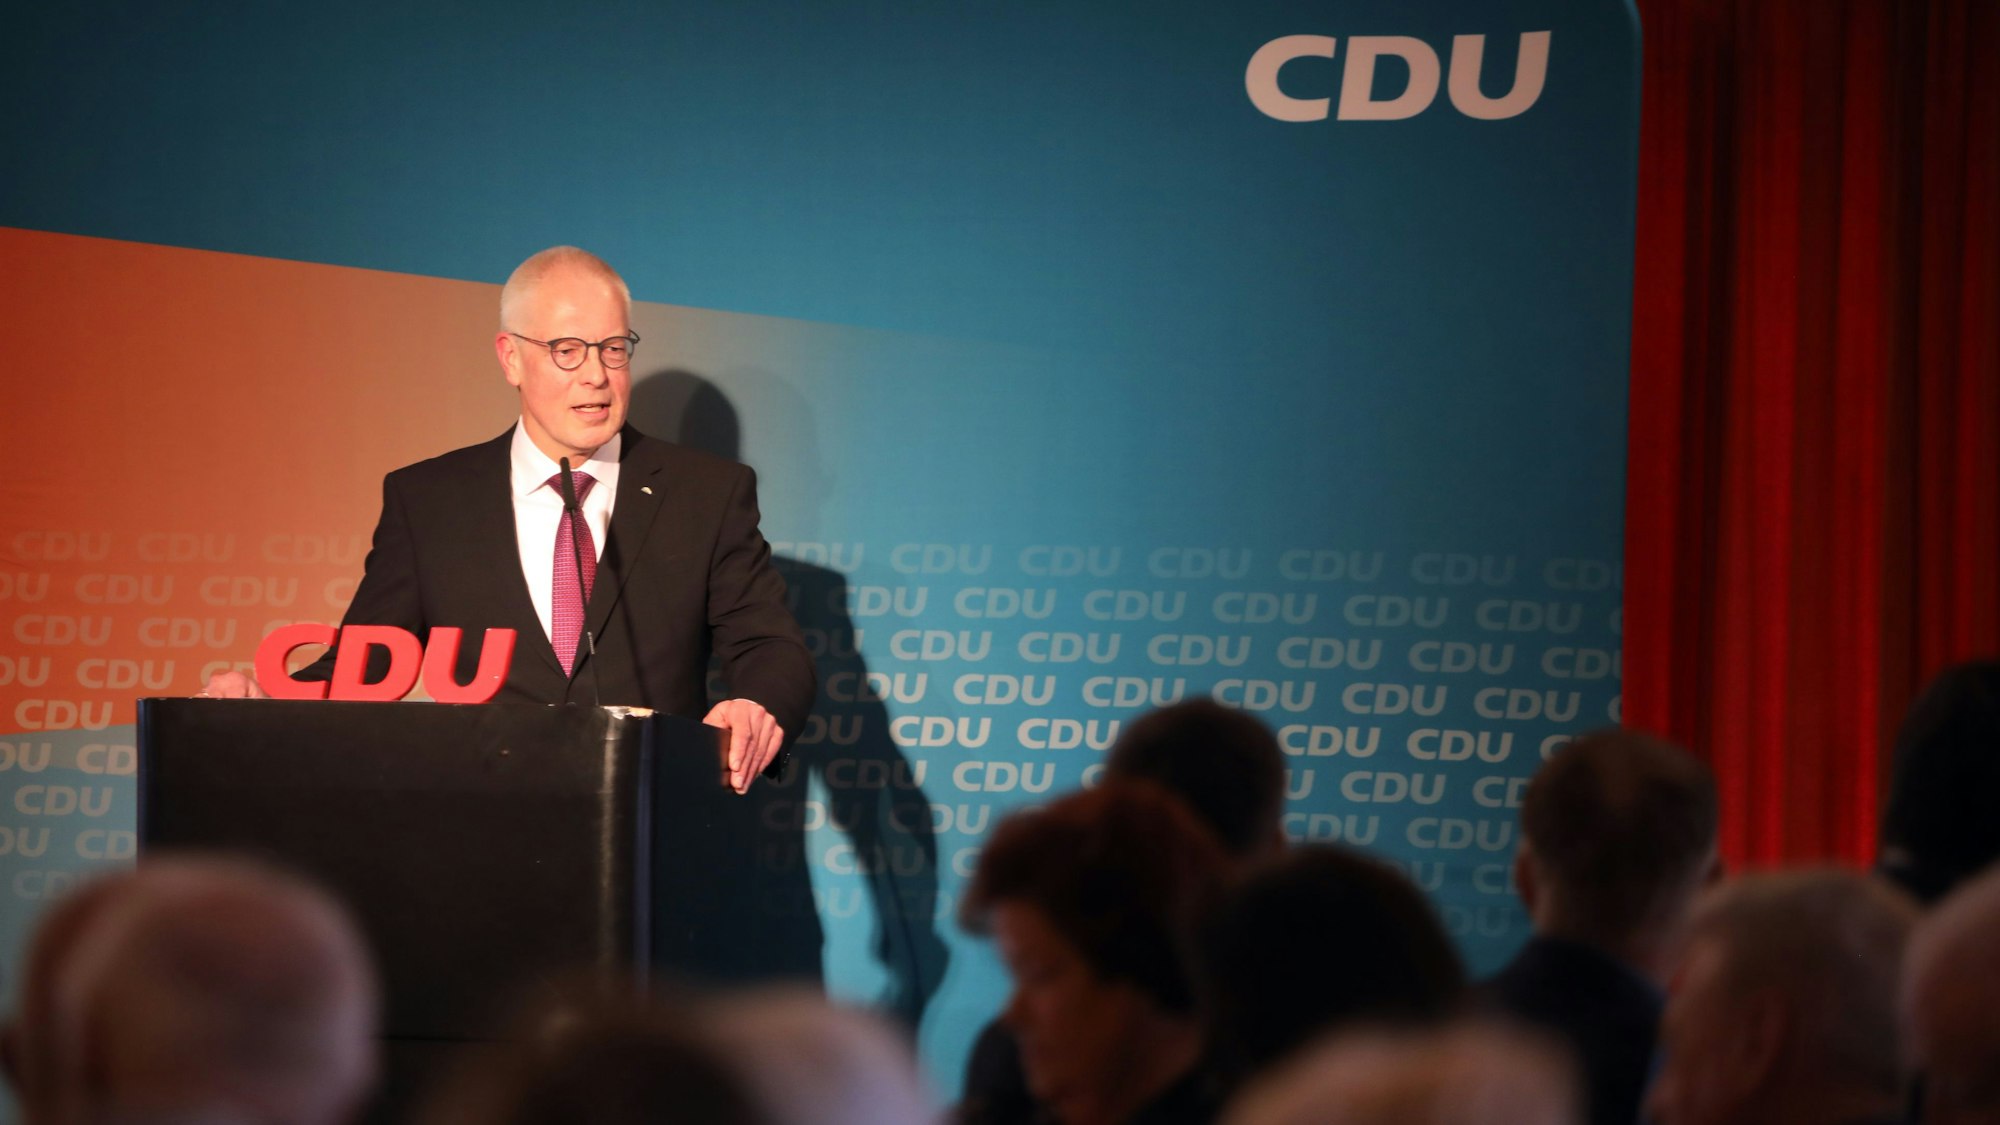 Der CDU-Kreisvorsitzender Dr. Hermann-Josef Tebroke steht bei einer Versammlung an einem Rednerpult vor einer Wand mit CDU-Schriftzügen.